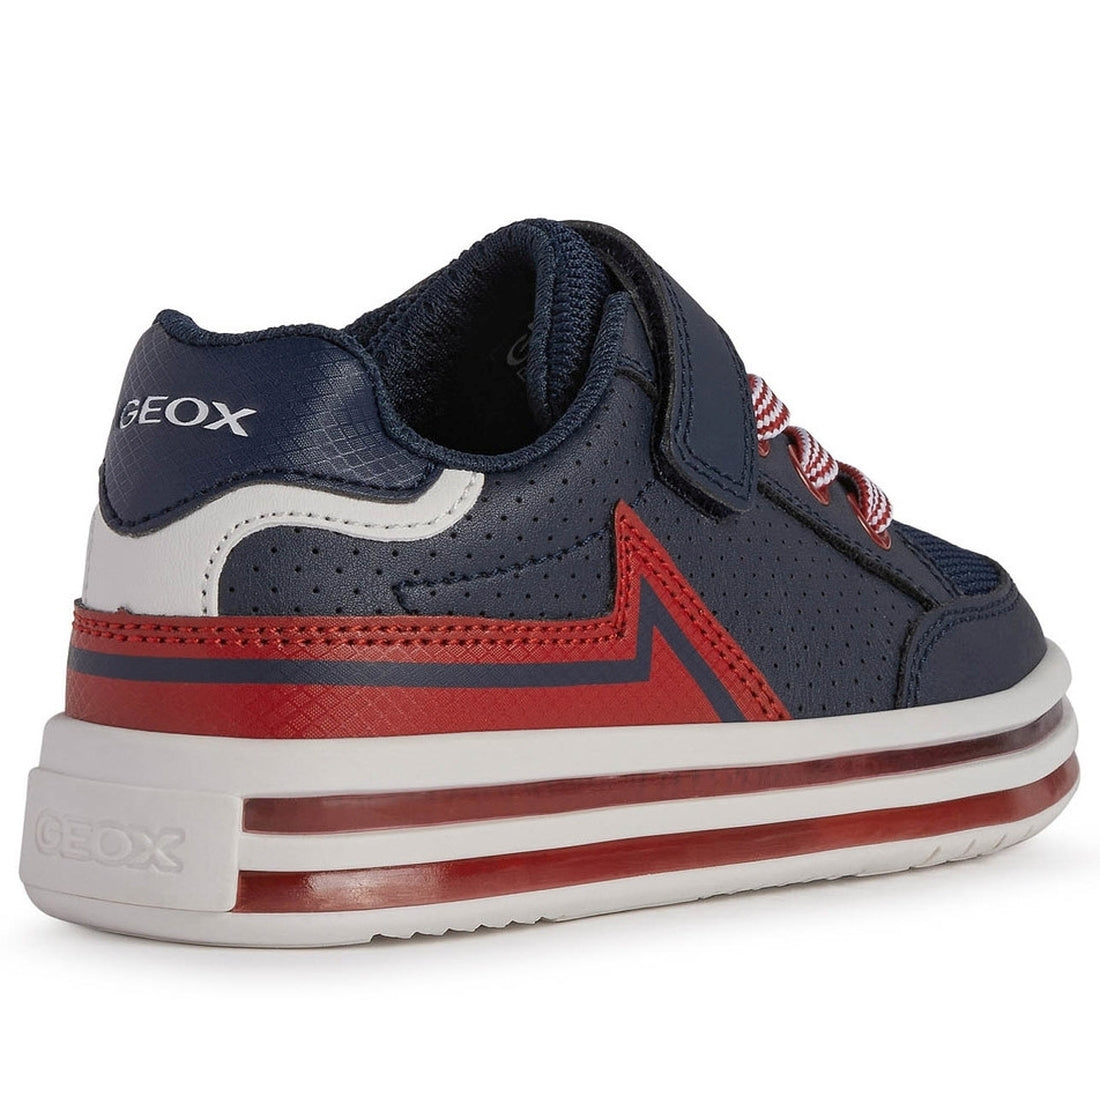 Geox Boys Navy Red pawnee shoes | Vilbury London